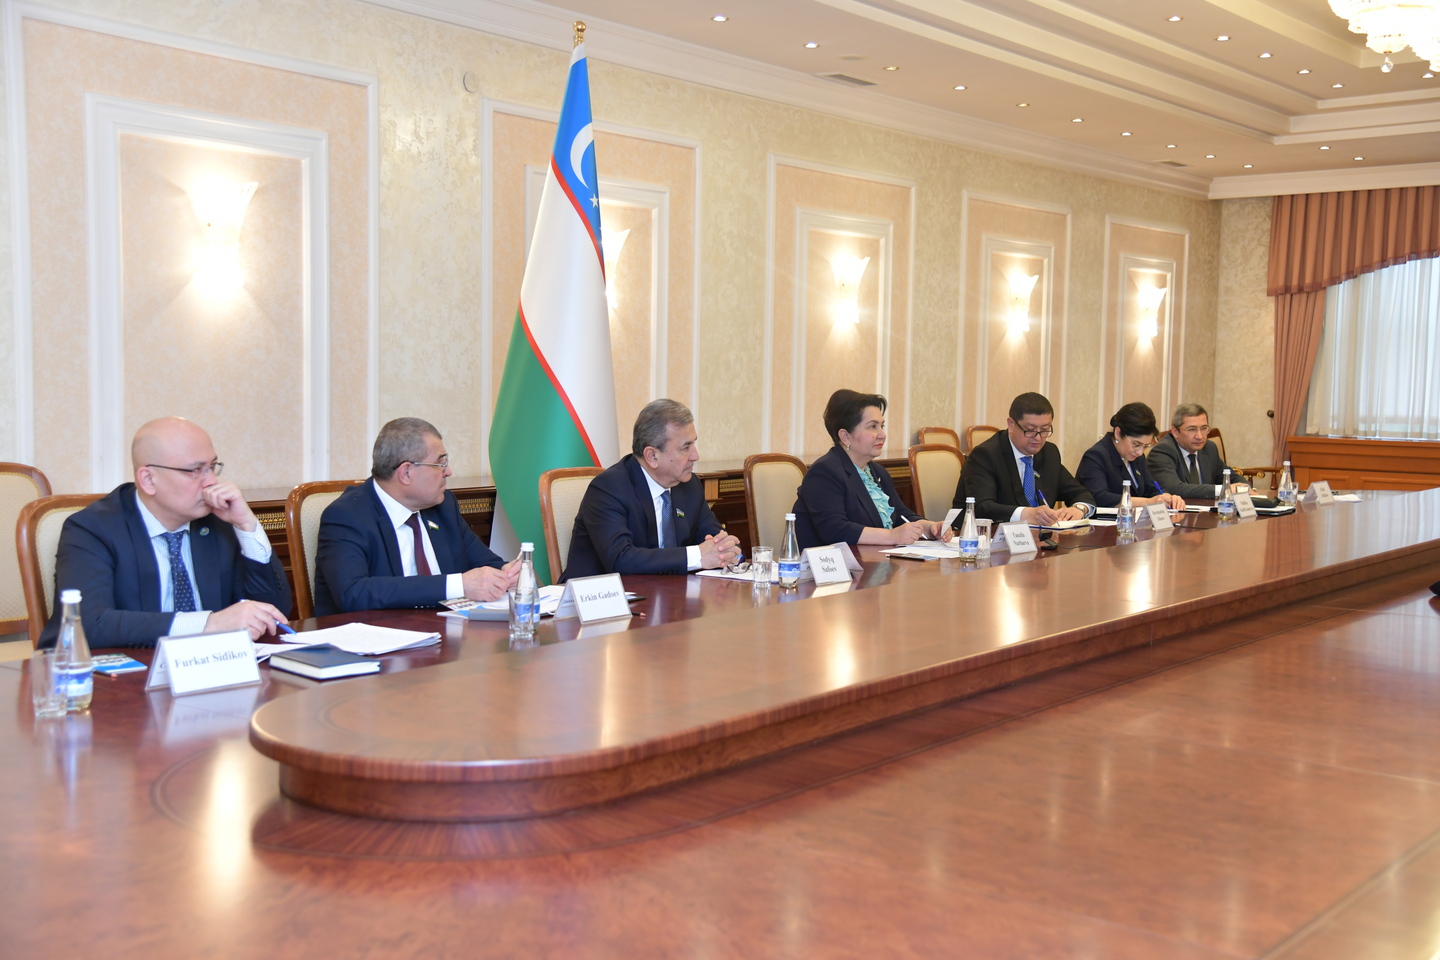 Состоялся межпарламентский диалог в онлайн формате между Узбекистаном и Китаем